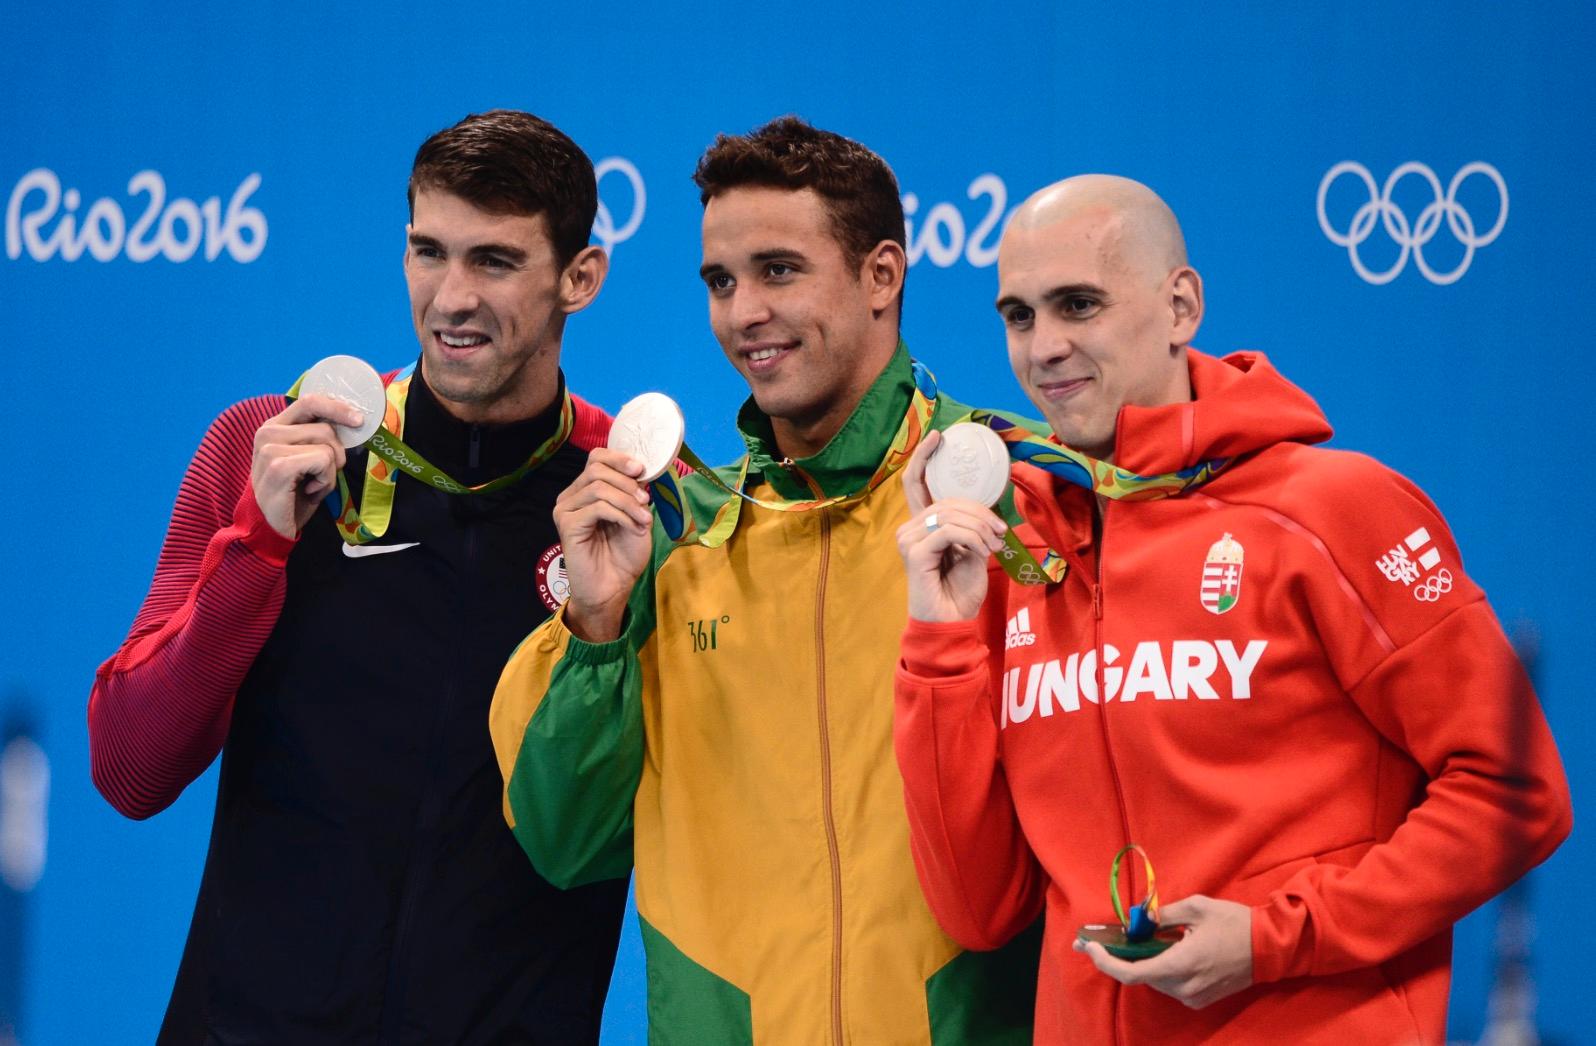 Michael Phelps, Chad Le Clos och Laszlo Cseh simmade alla på 51,14 och fick dela på silvret.